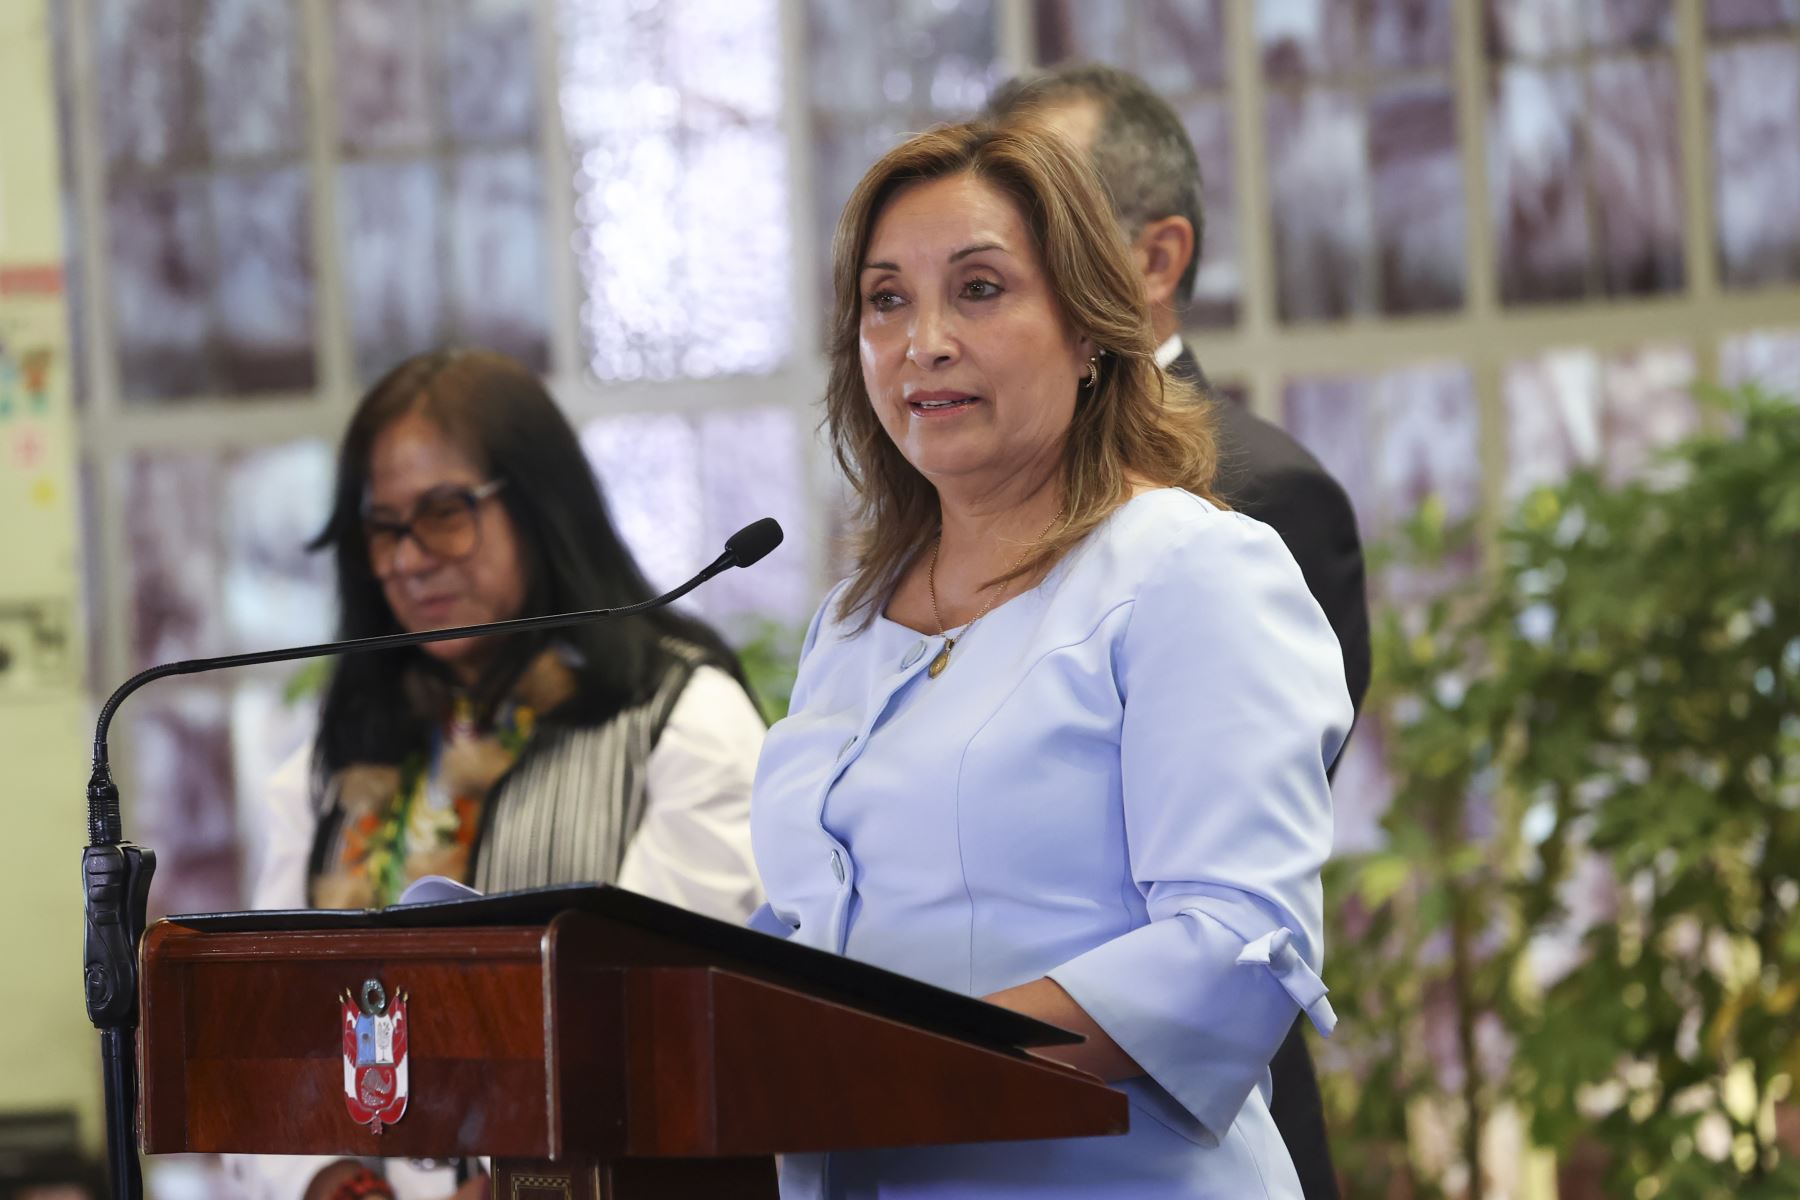 La presidenta Dina Boluarte participó en la ceremonia de reconocimiento de los "Mejores Pueblos Turísticos del Mundo" otorgado por la Organización Mundial del Turismo, siendo el Perú uno de los países más distinguidos entre las 60 naciones participantes.
Foto: ANDINA/Presidencia Perú